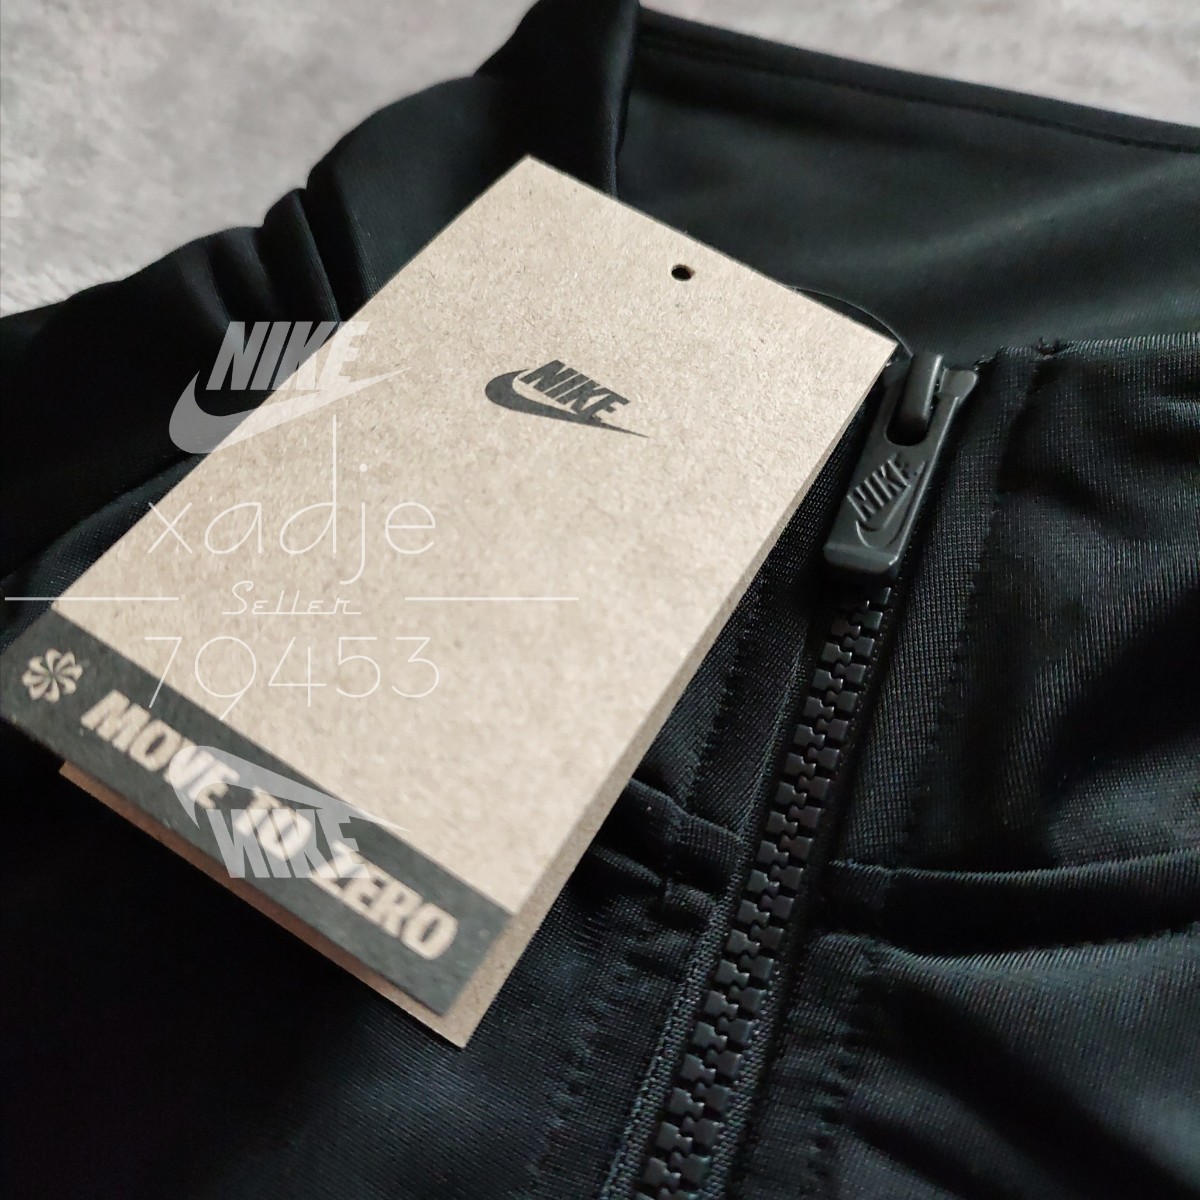 新品 正規品 NIKE ナイキ ジャージ 上下セット ジャケット パンツ ロゴ刺繍 セットアップ MOVE TO ZERO 黒 ブラック 白 XL